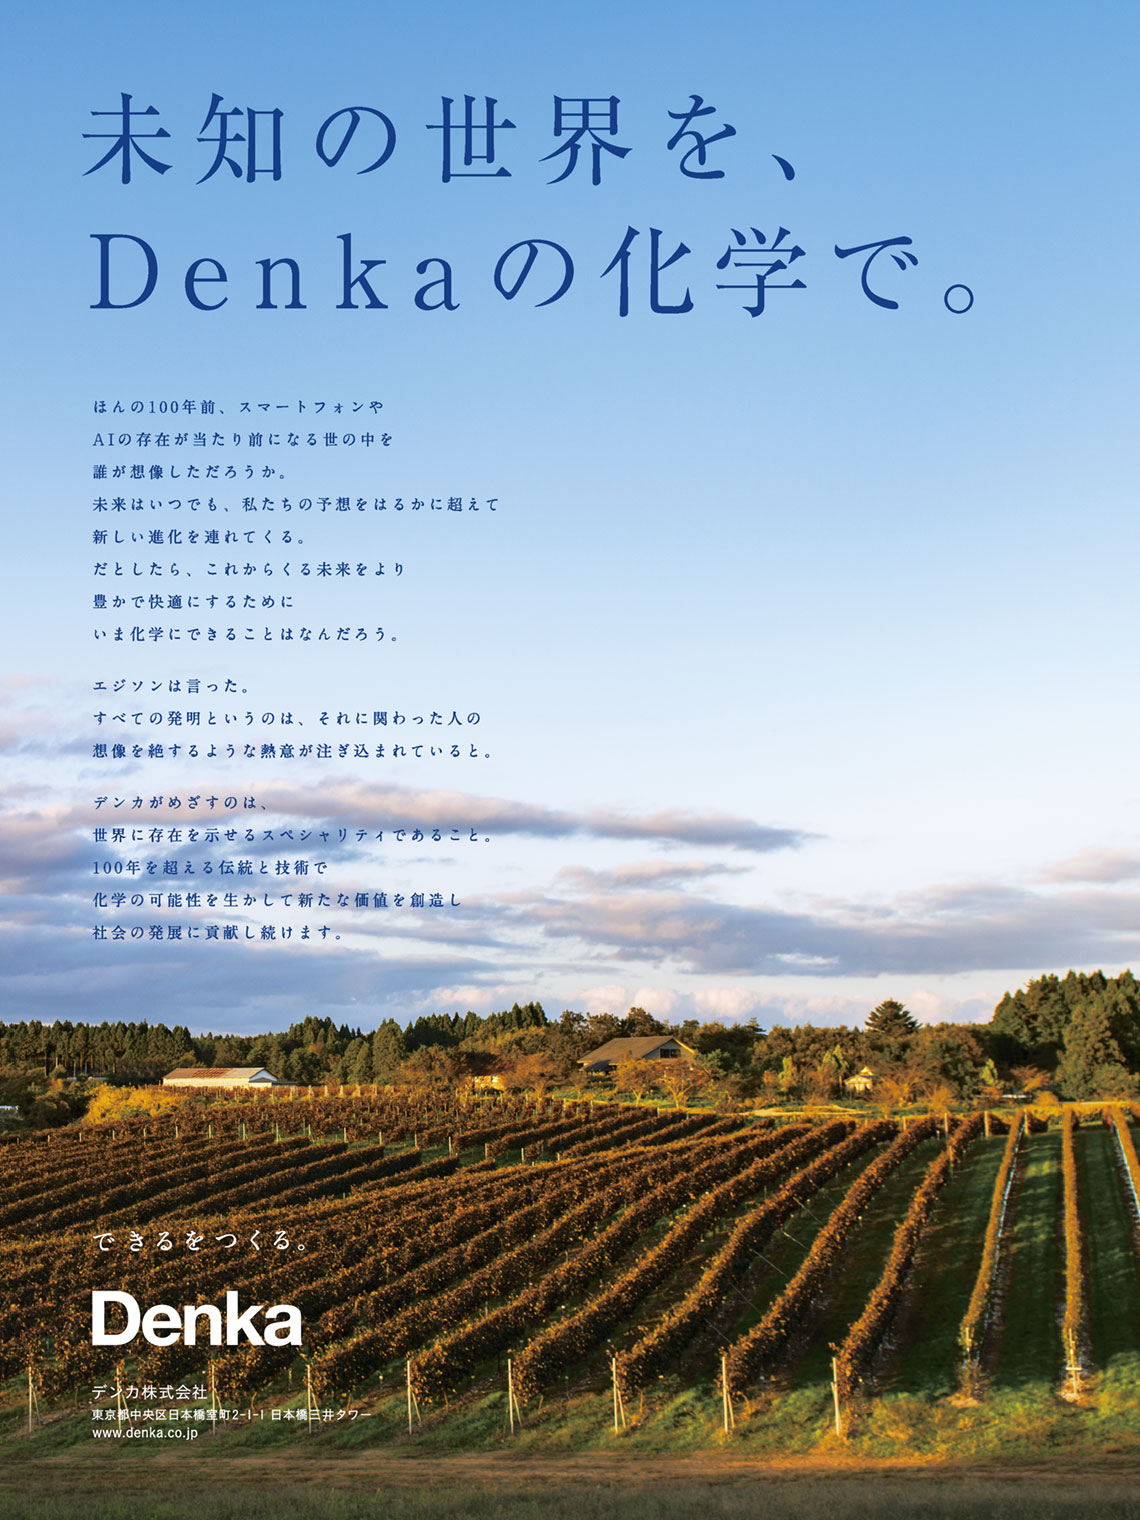 企業広告とデザイン デンカ株式会社